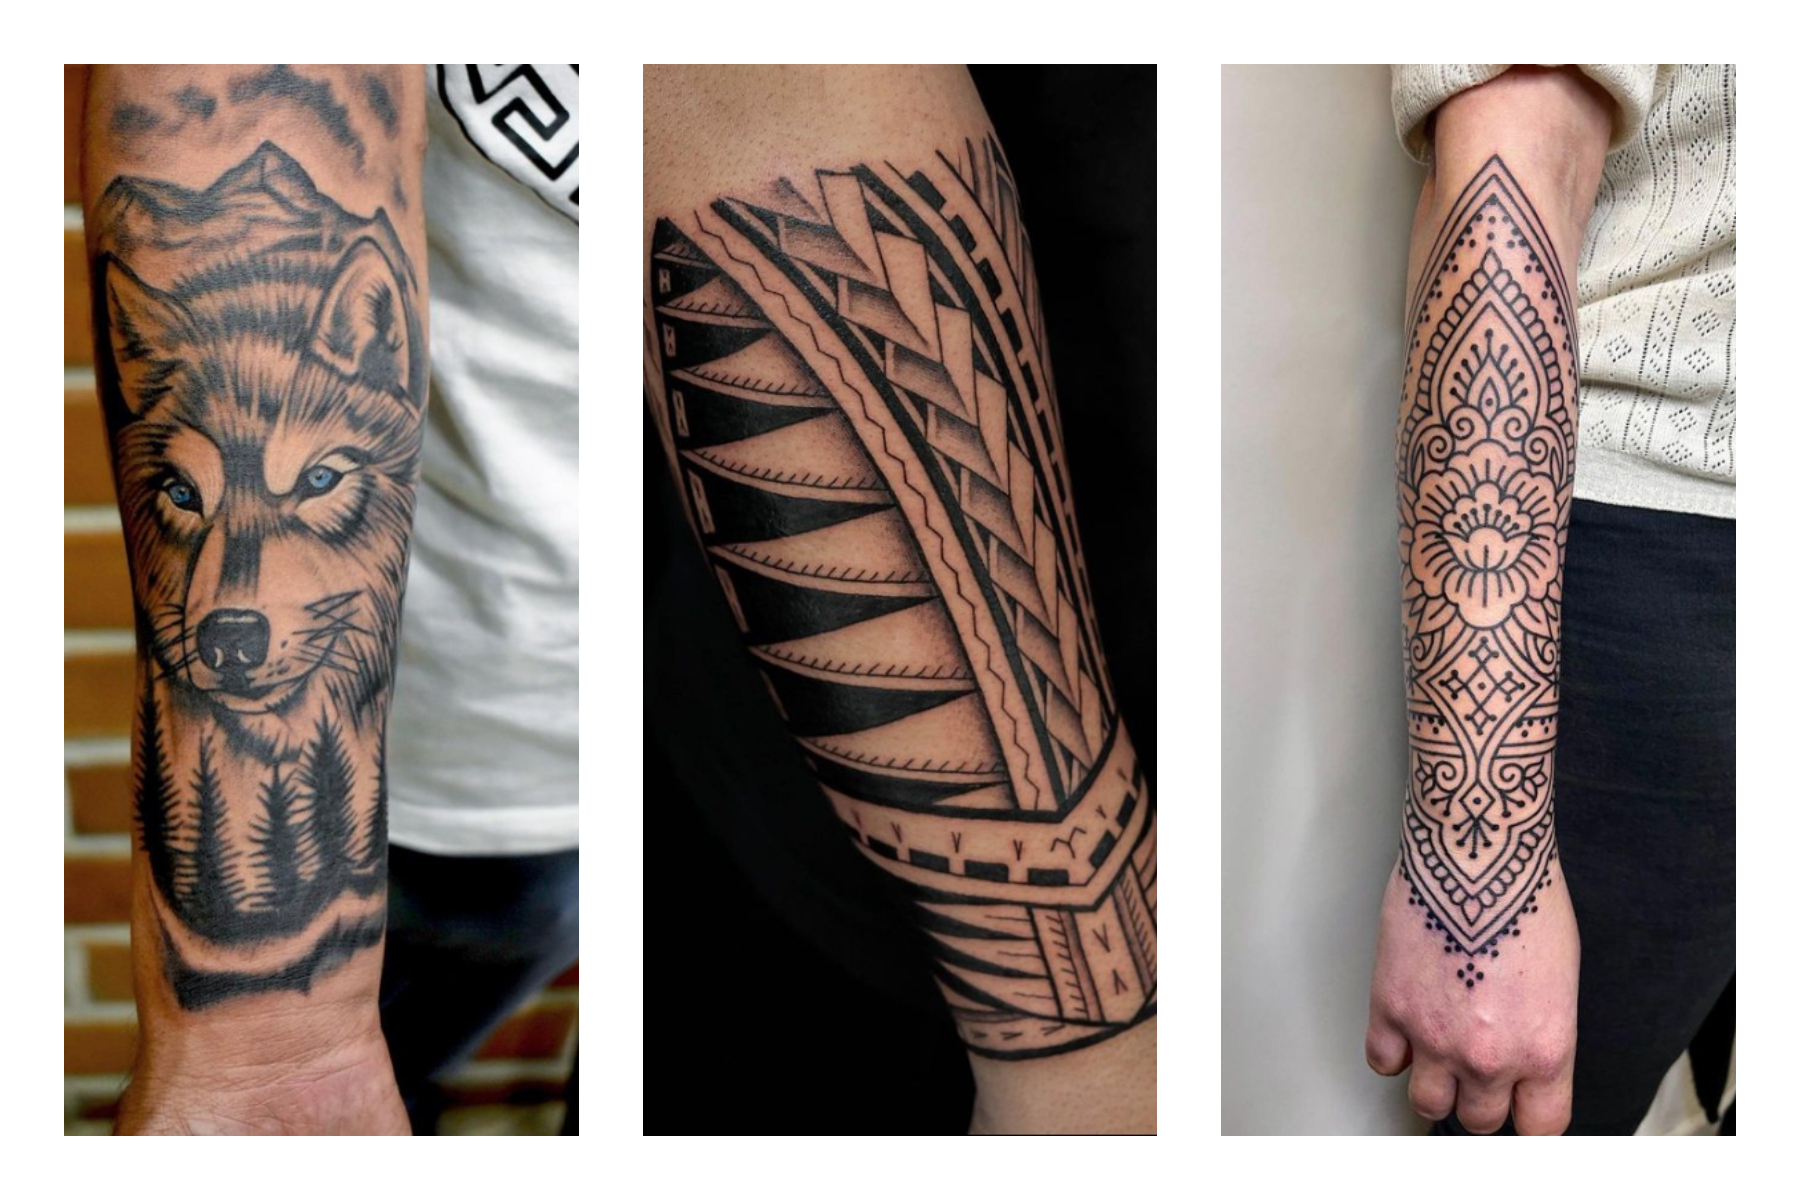 27 Small Tattoo Ideas for Men That Make A Big Statement - tattooglee |  Small tattoos, Tattoo inspiration men, Cool small tattoos